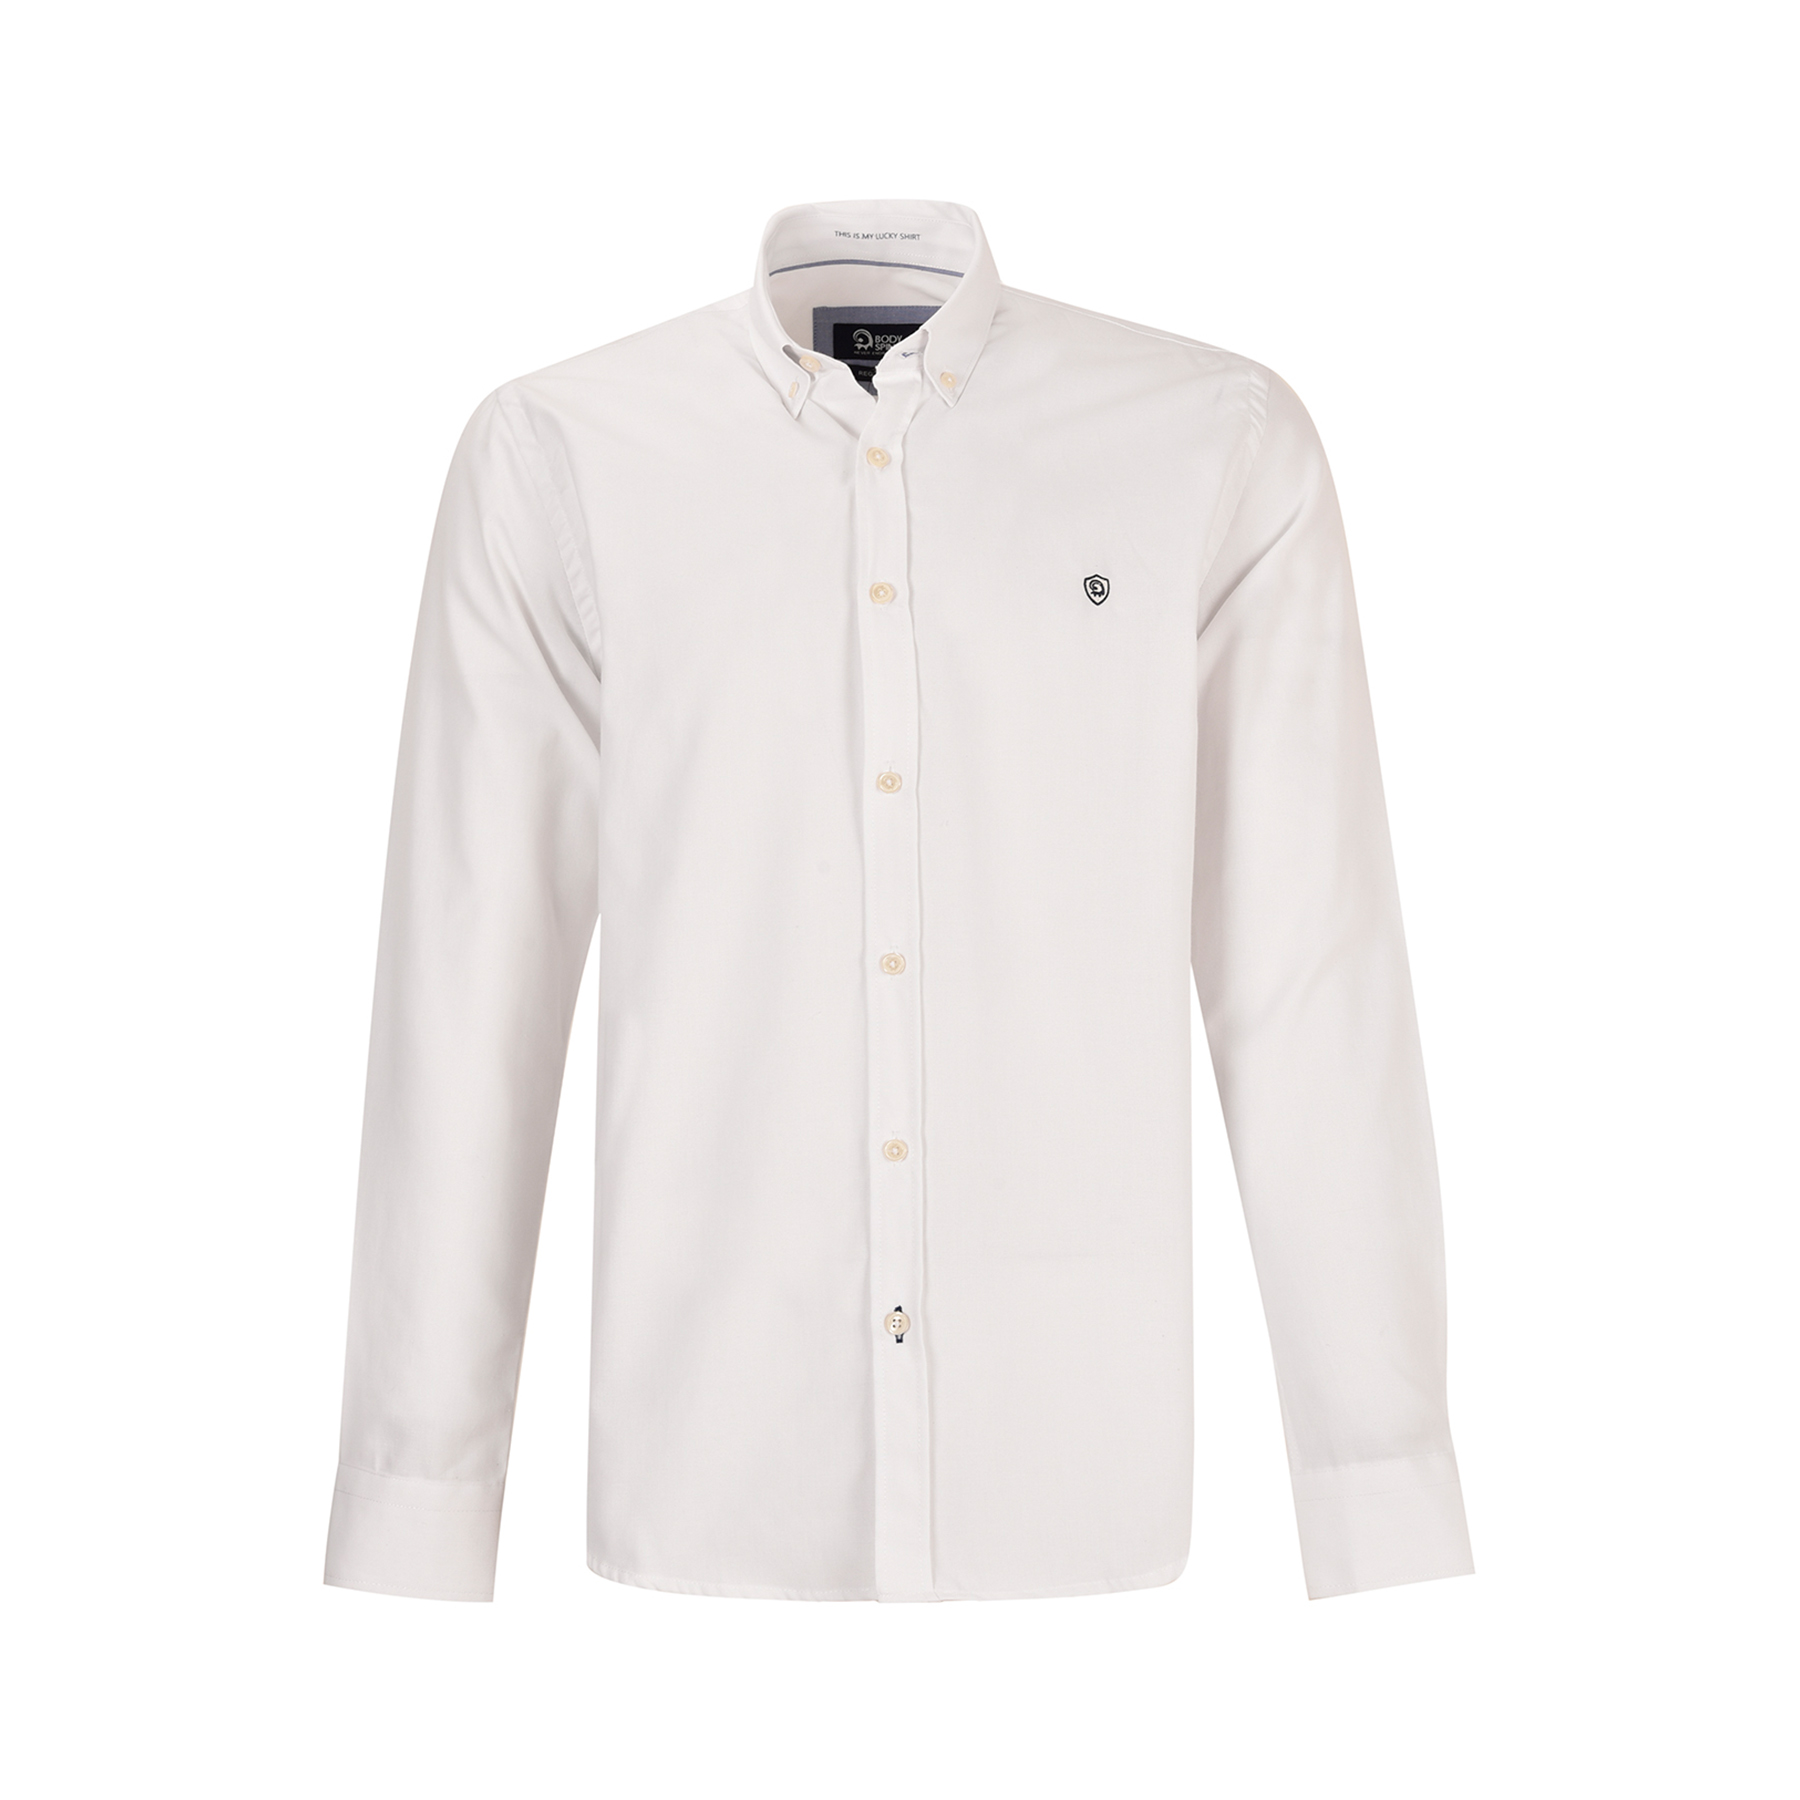 پیراهن آستین بلند مردانه بادی اسپینر مدل 1107 کد 1 رنگ سفید